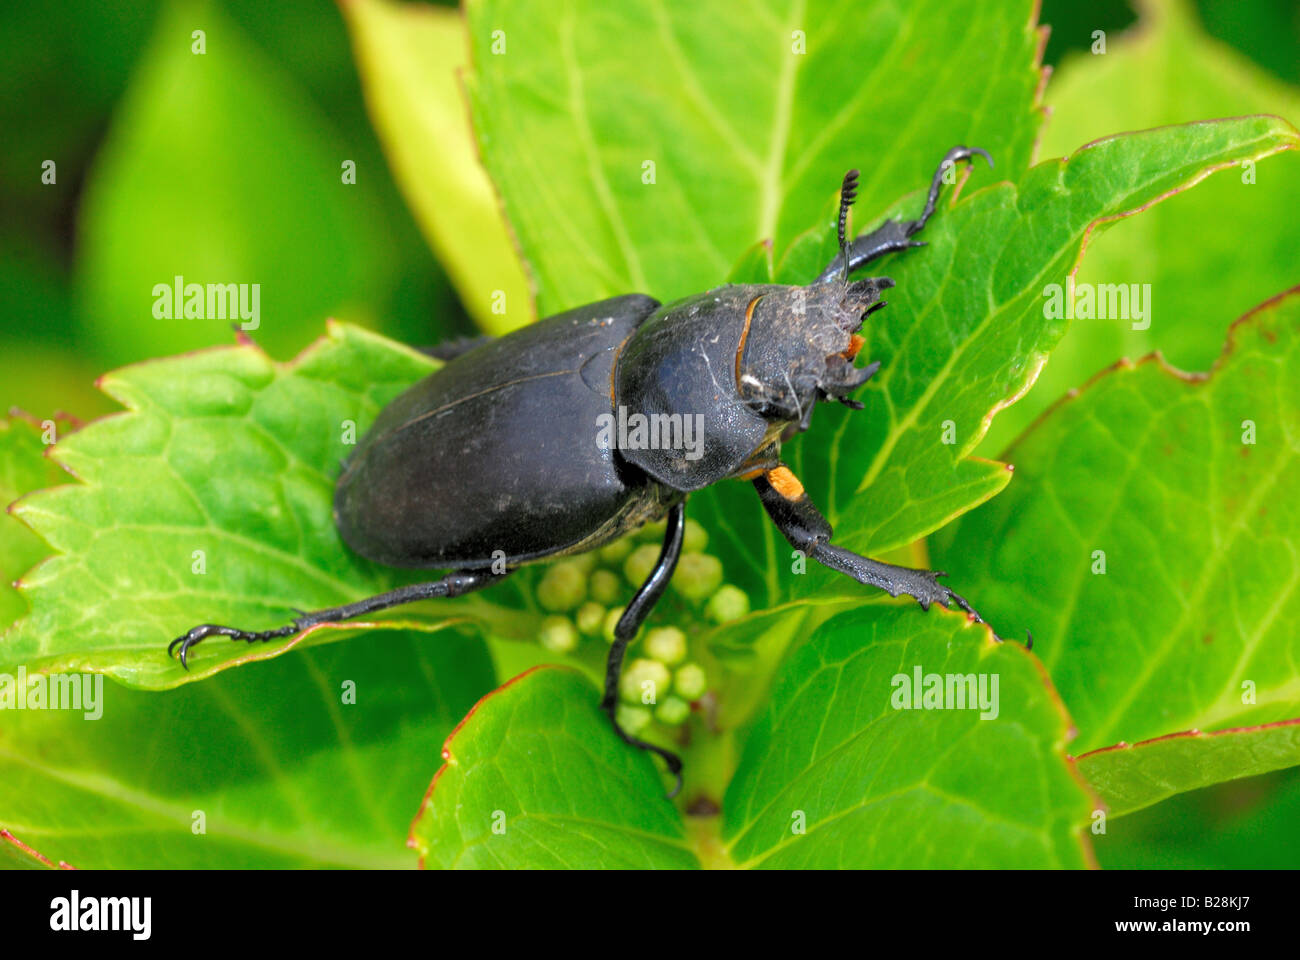 Stag beetle on leaf Stock Photo